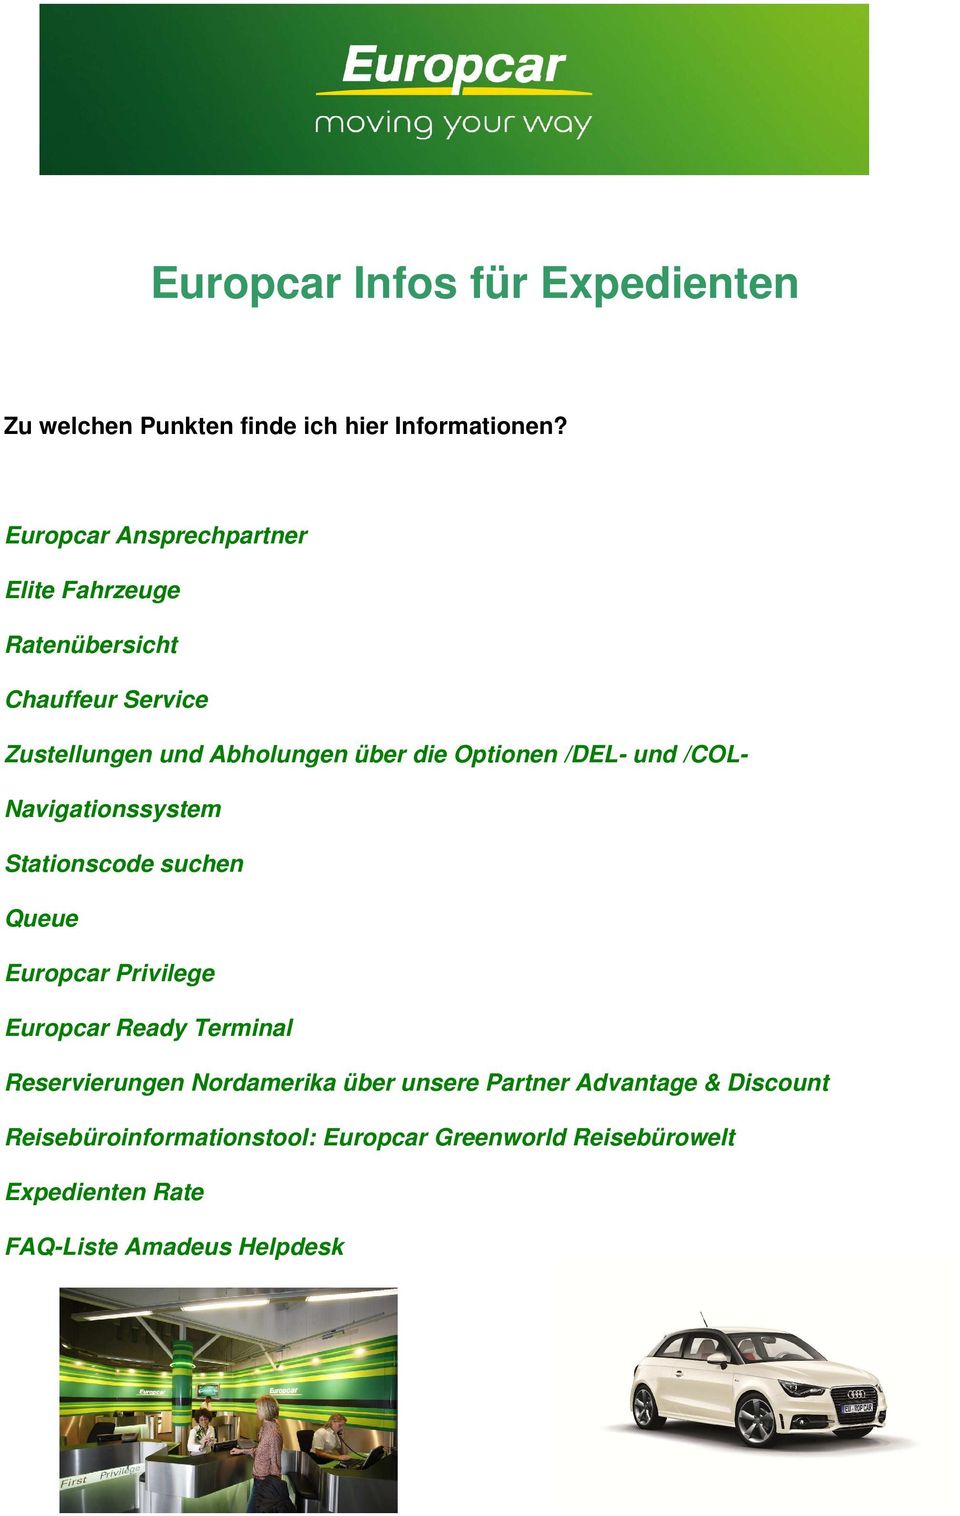 Europcar Infos Fur Expedienten Pdf Free Download